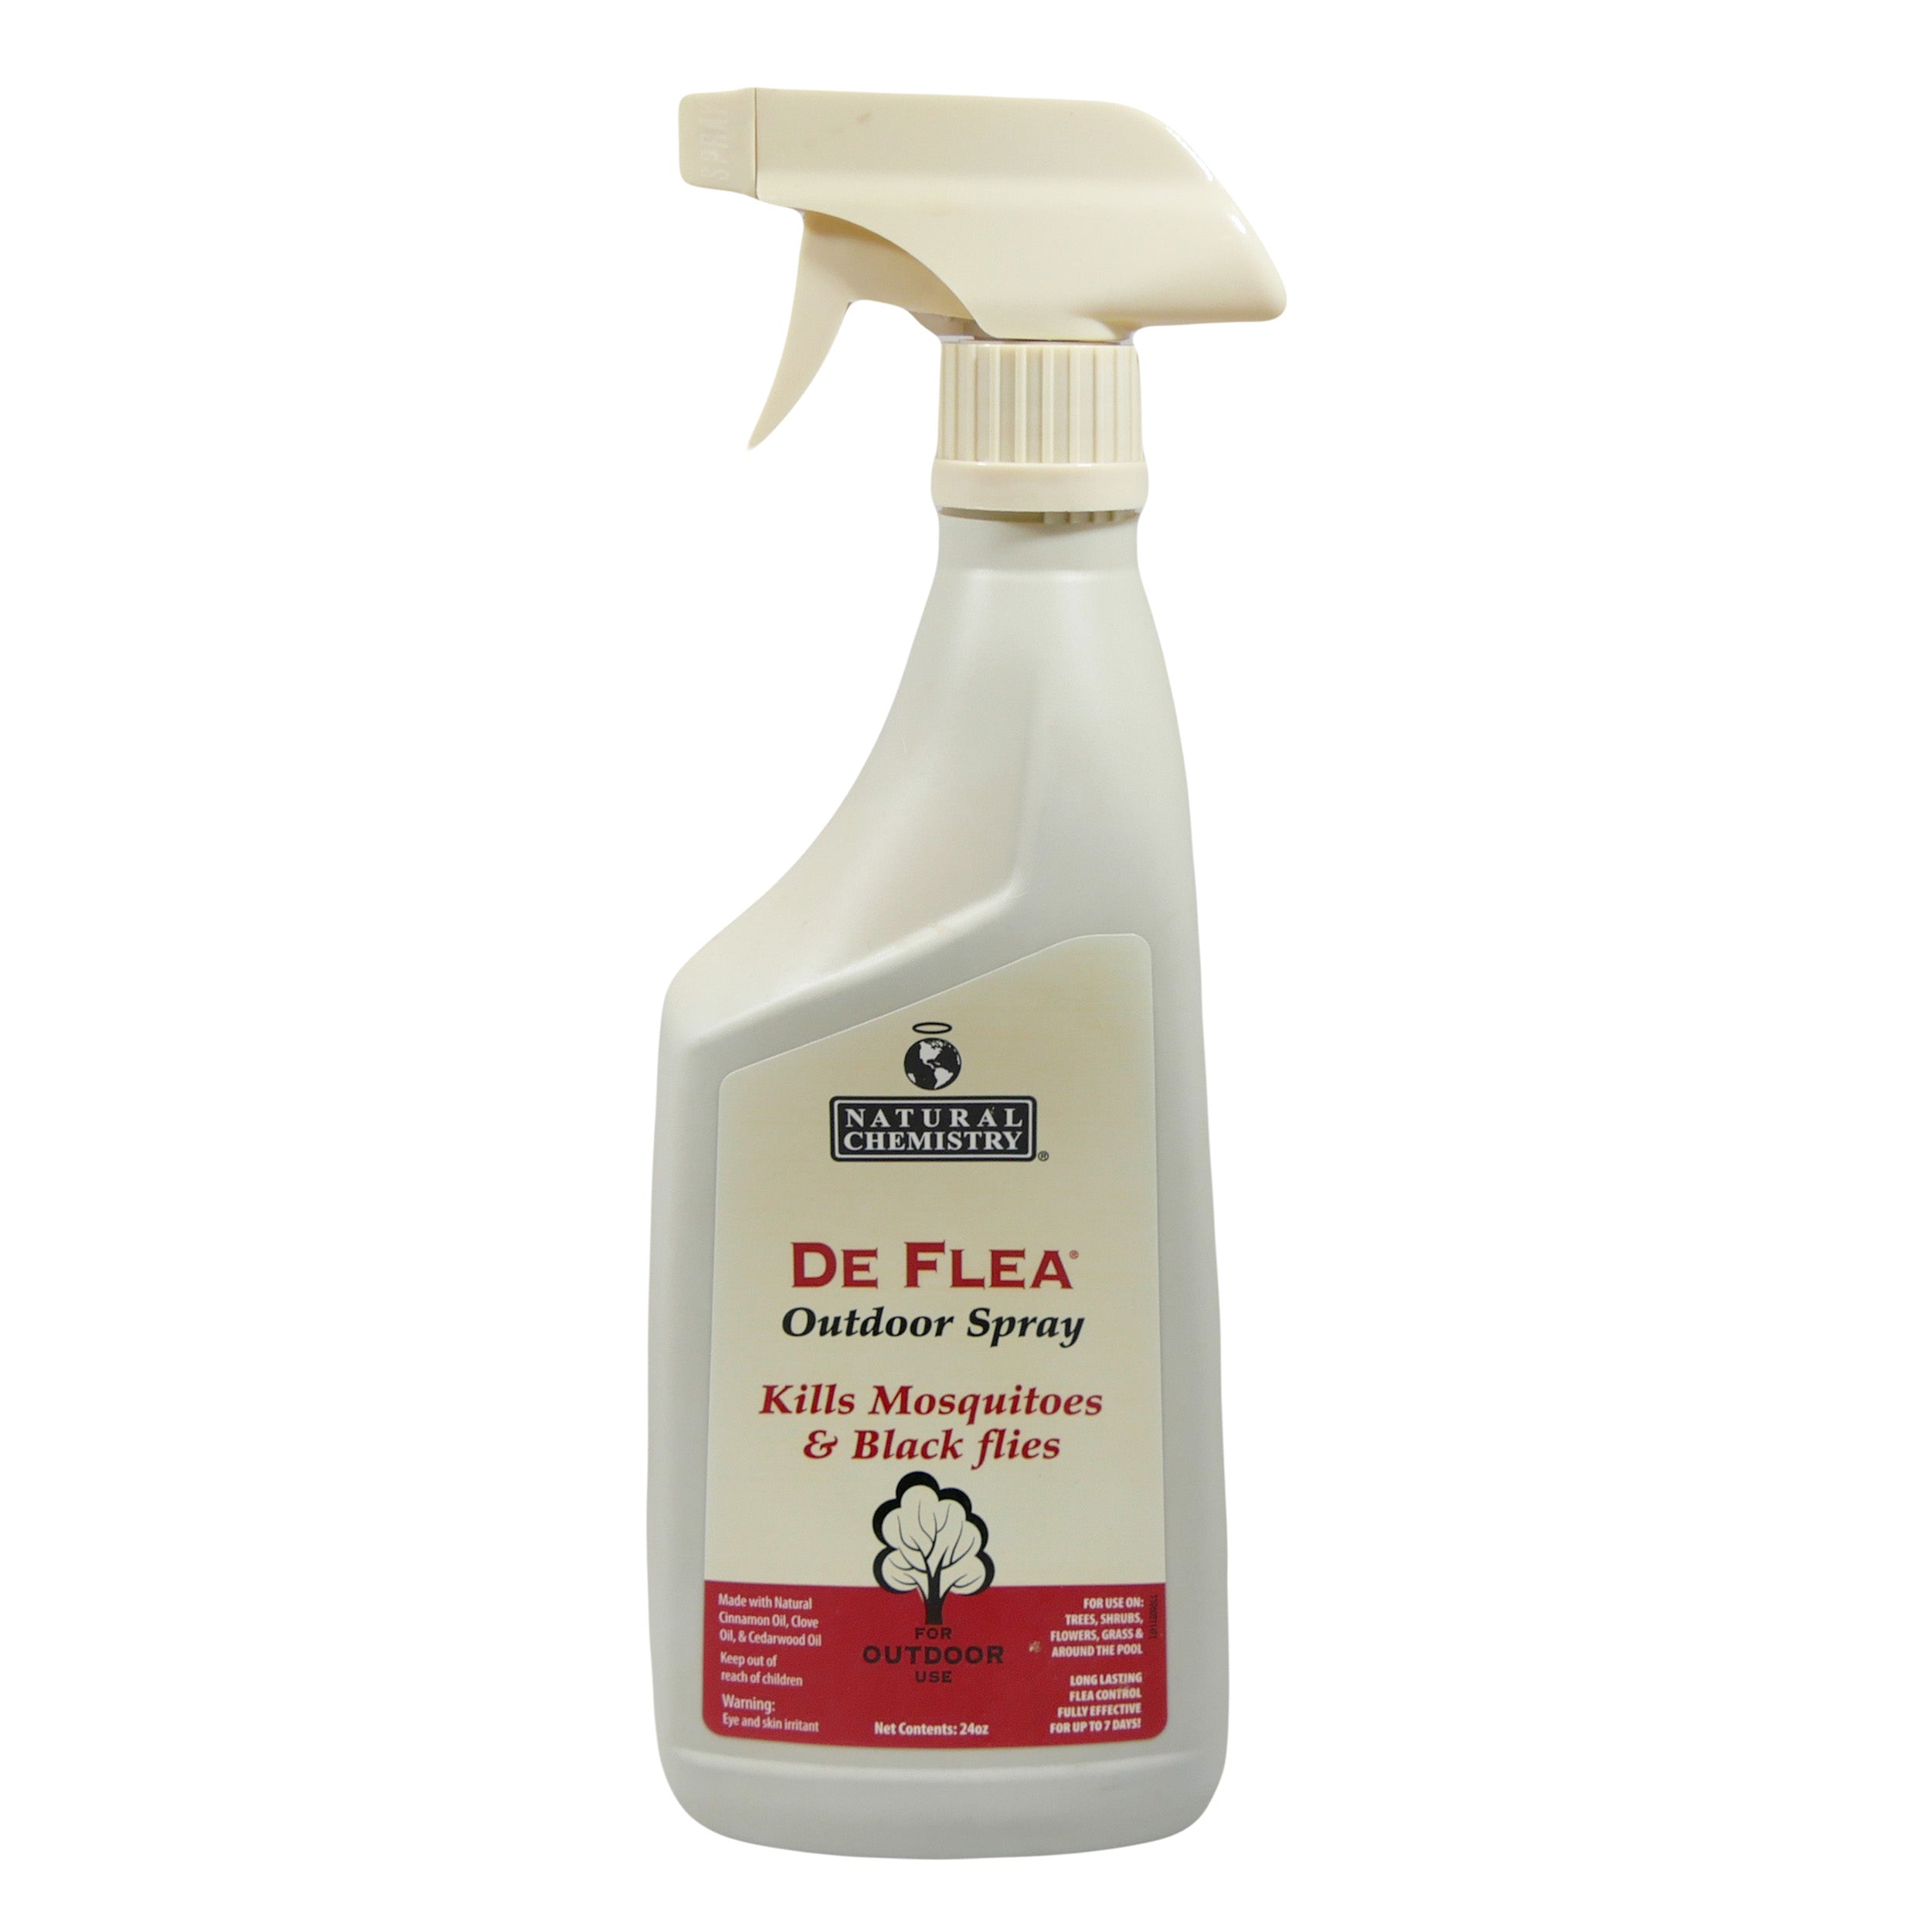 De Flea Outdoor Spray Kills Mosquitos & Black Flies 24 OZ